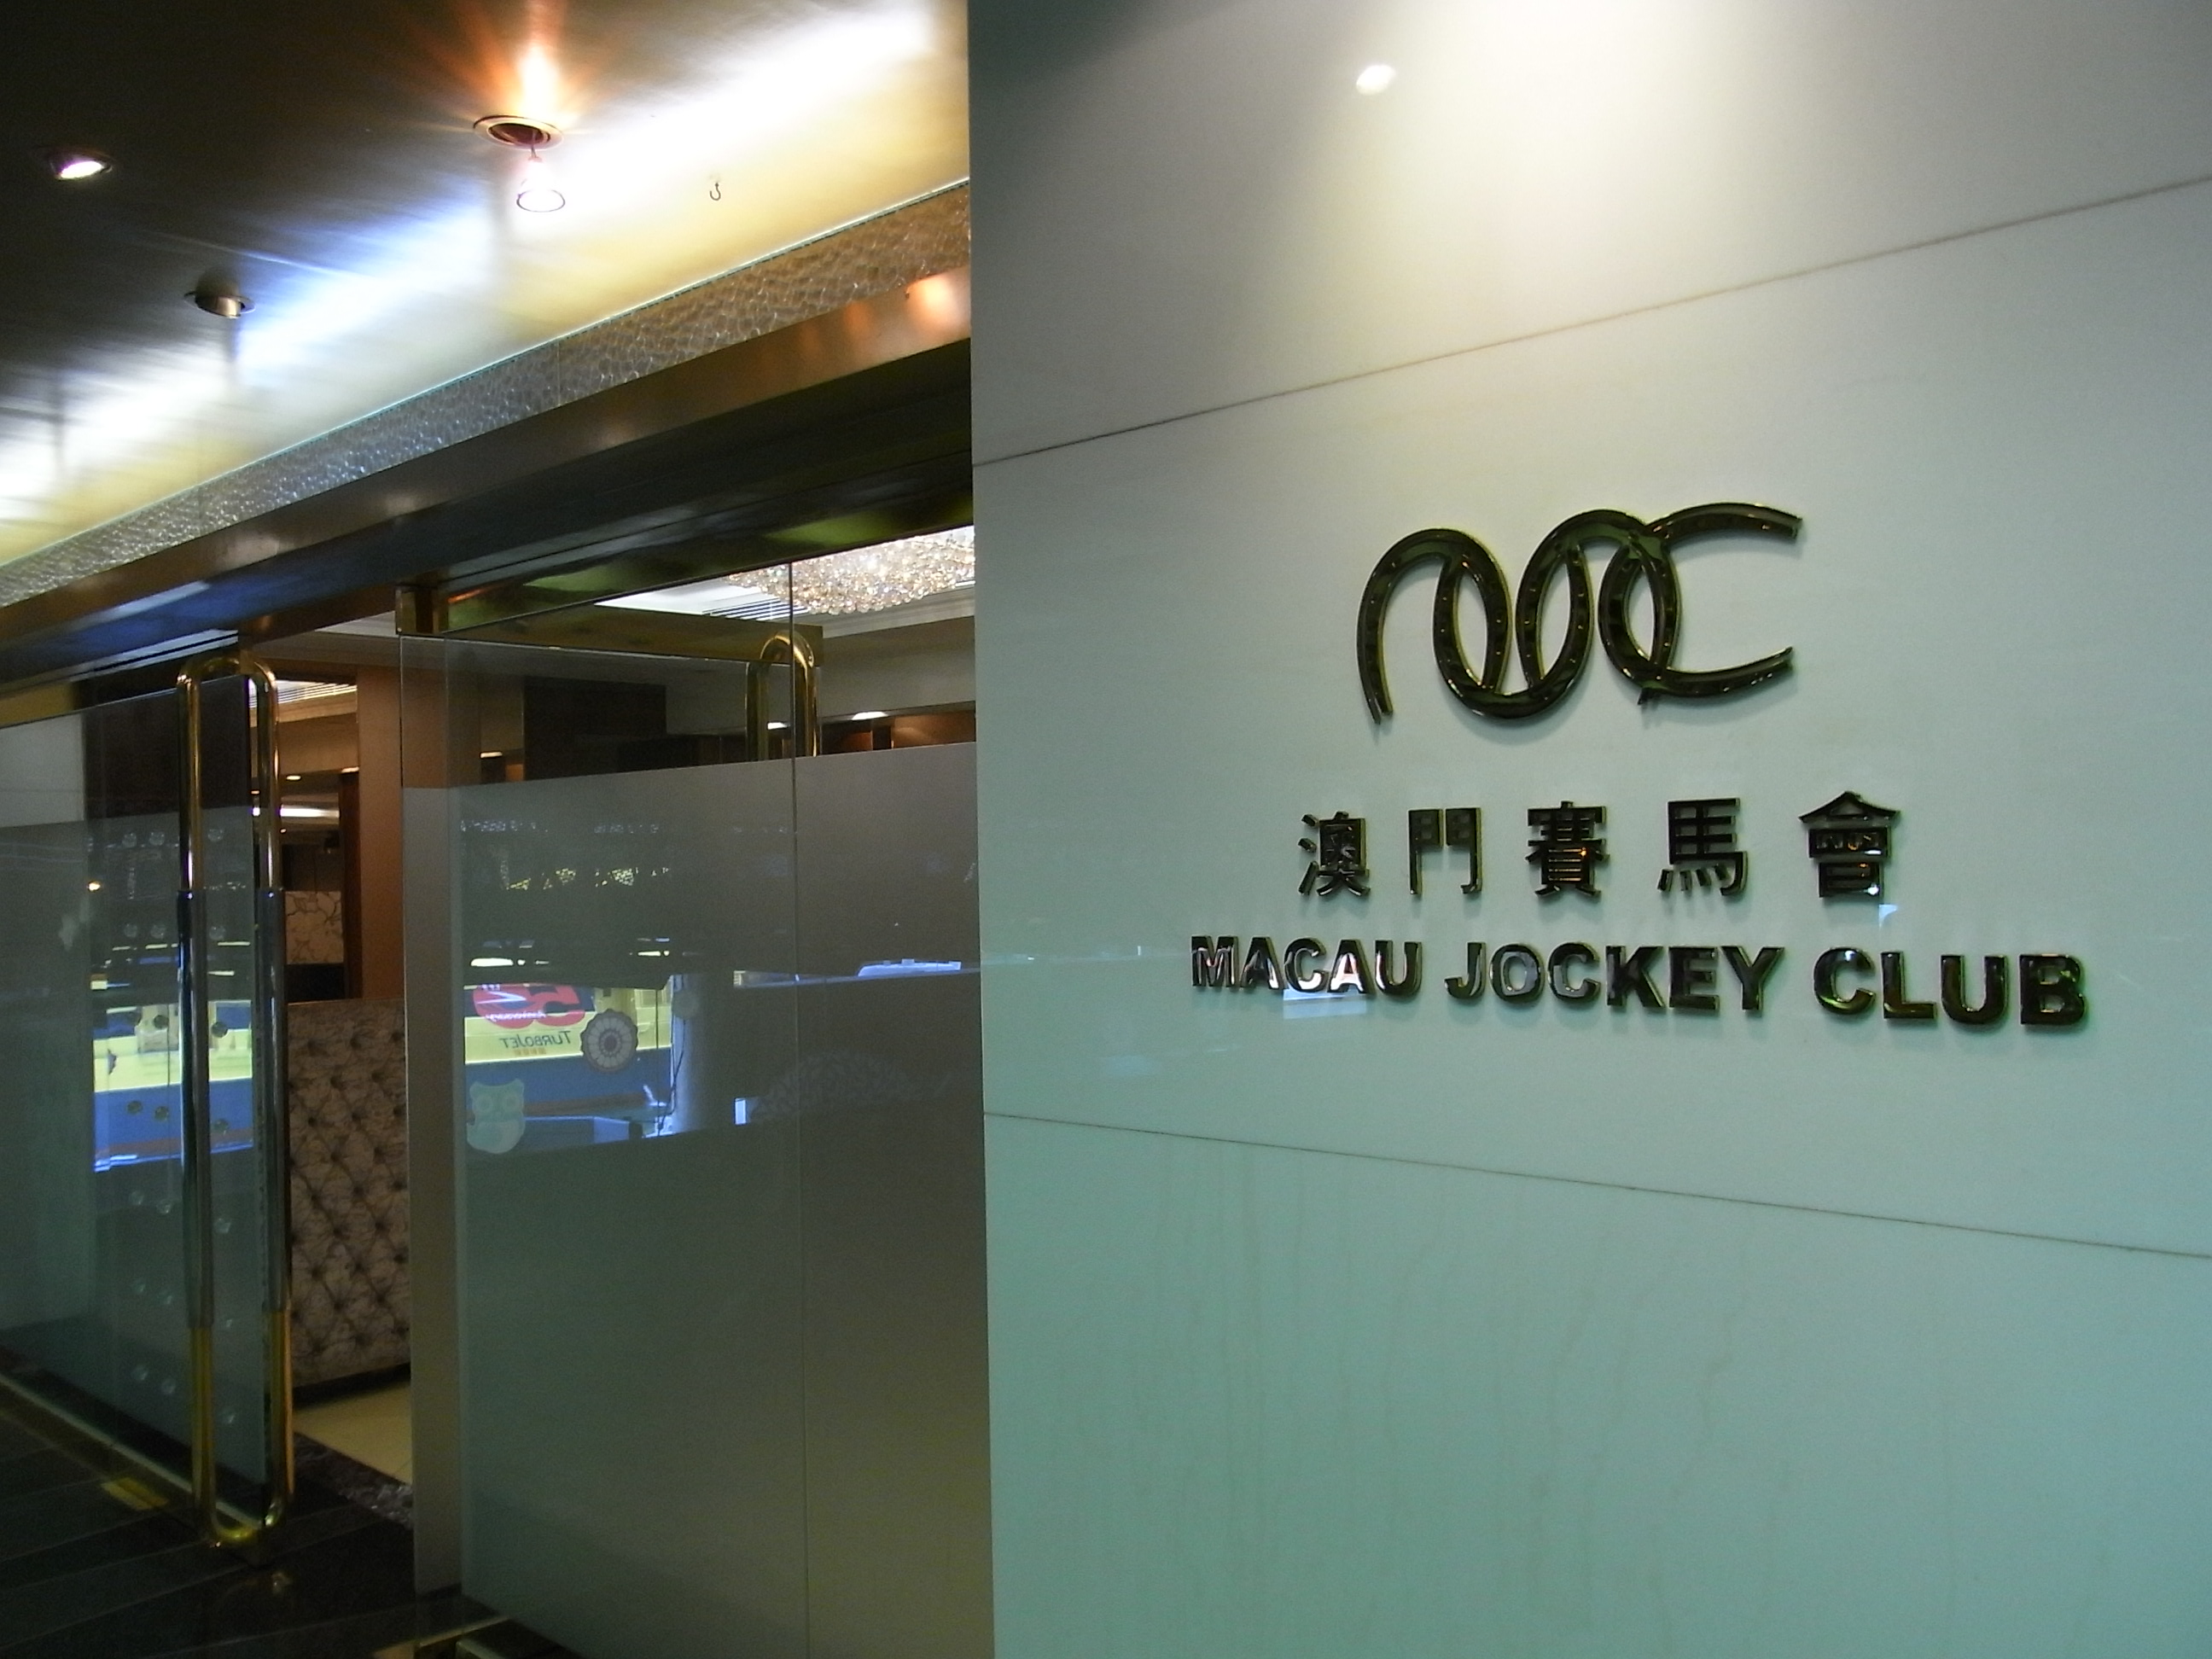 Macau Jockey Club Hong Kong Membership